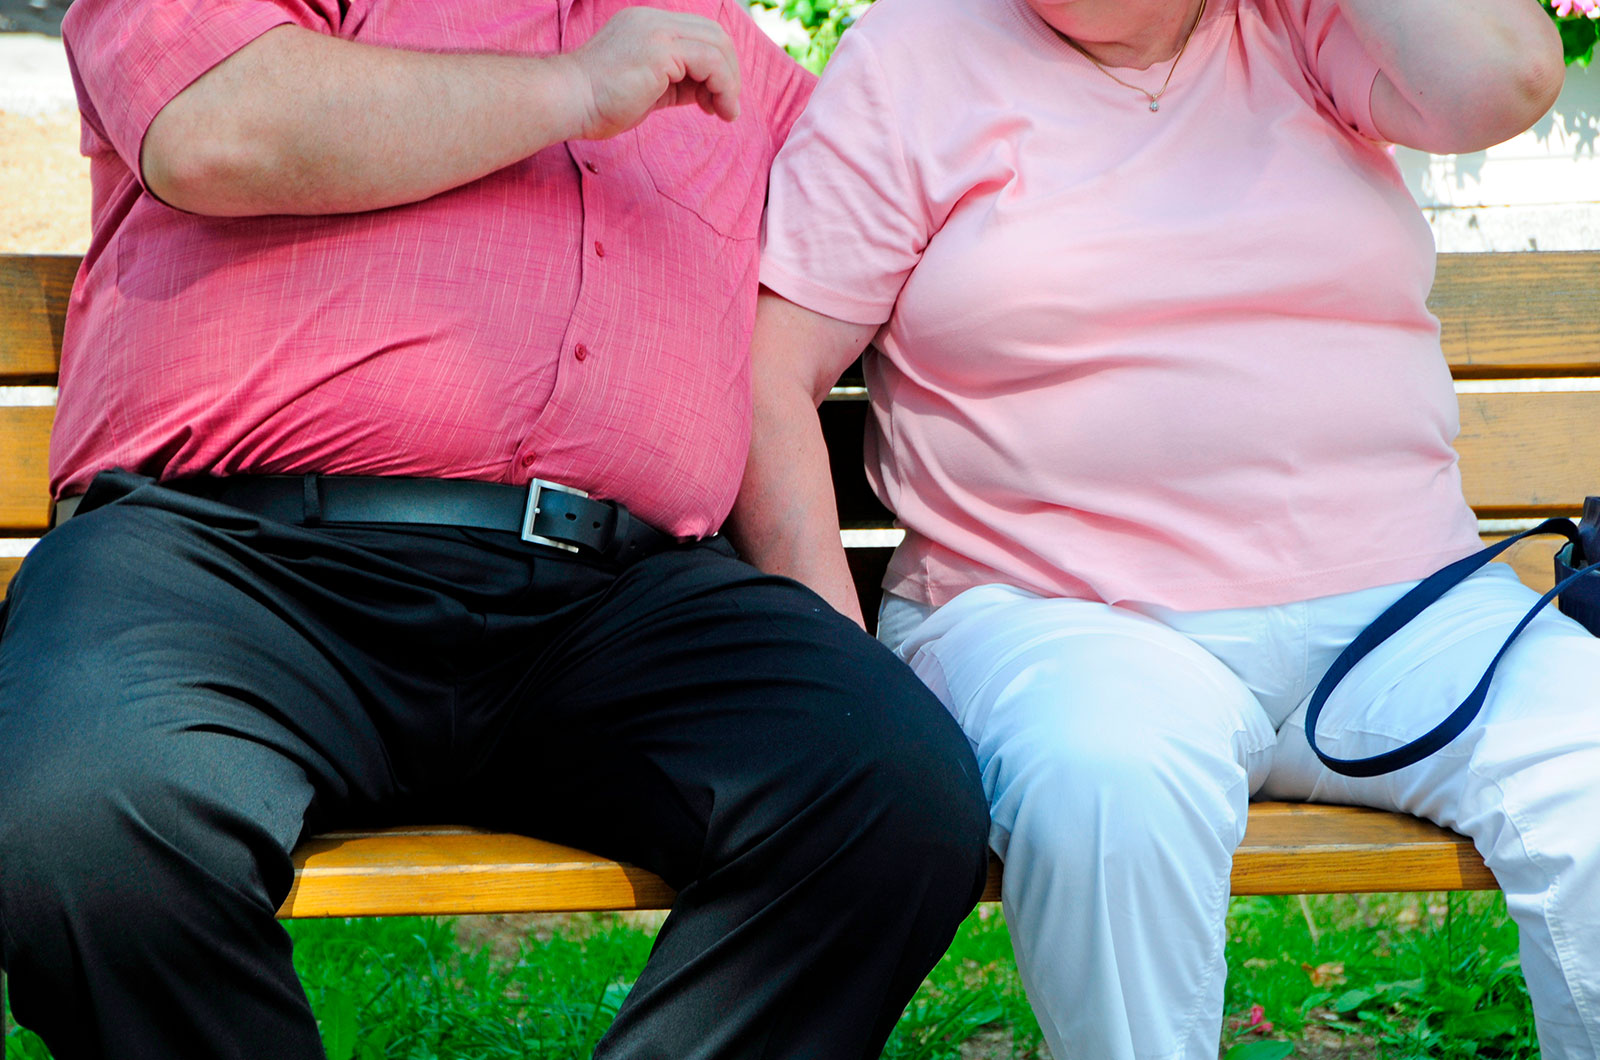 Risikofaktor Übergewicht, älteres Paar sitzend auf einer Bank 